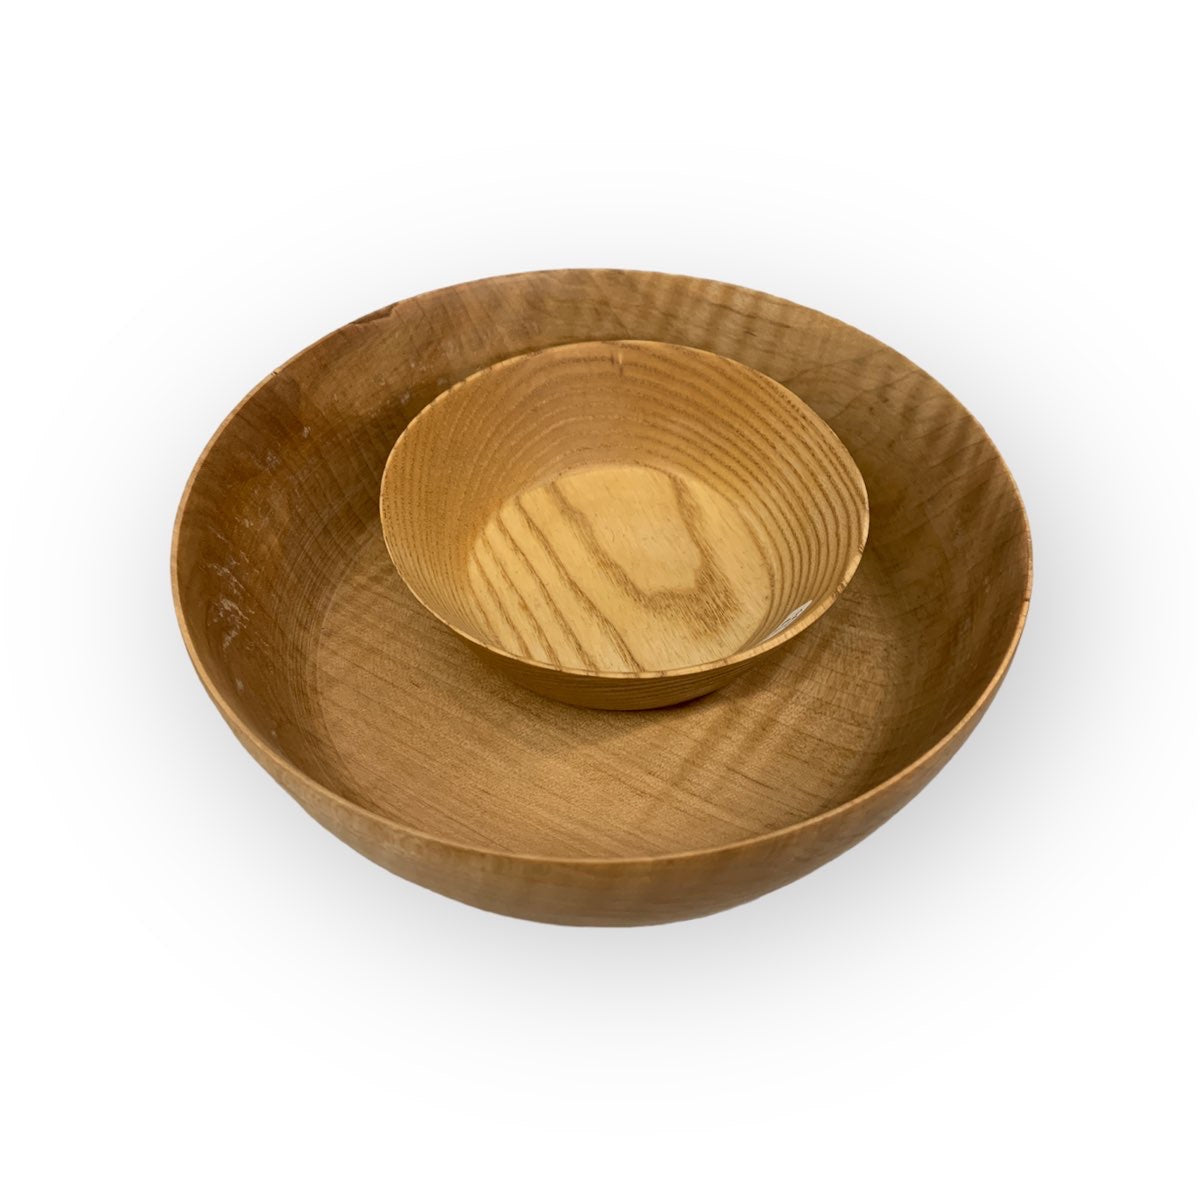 Wood Bowls in Ash by Jon Van Der Nol